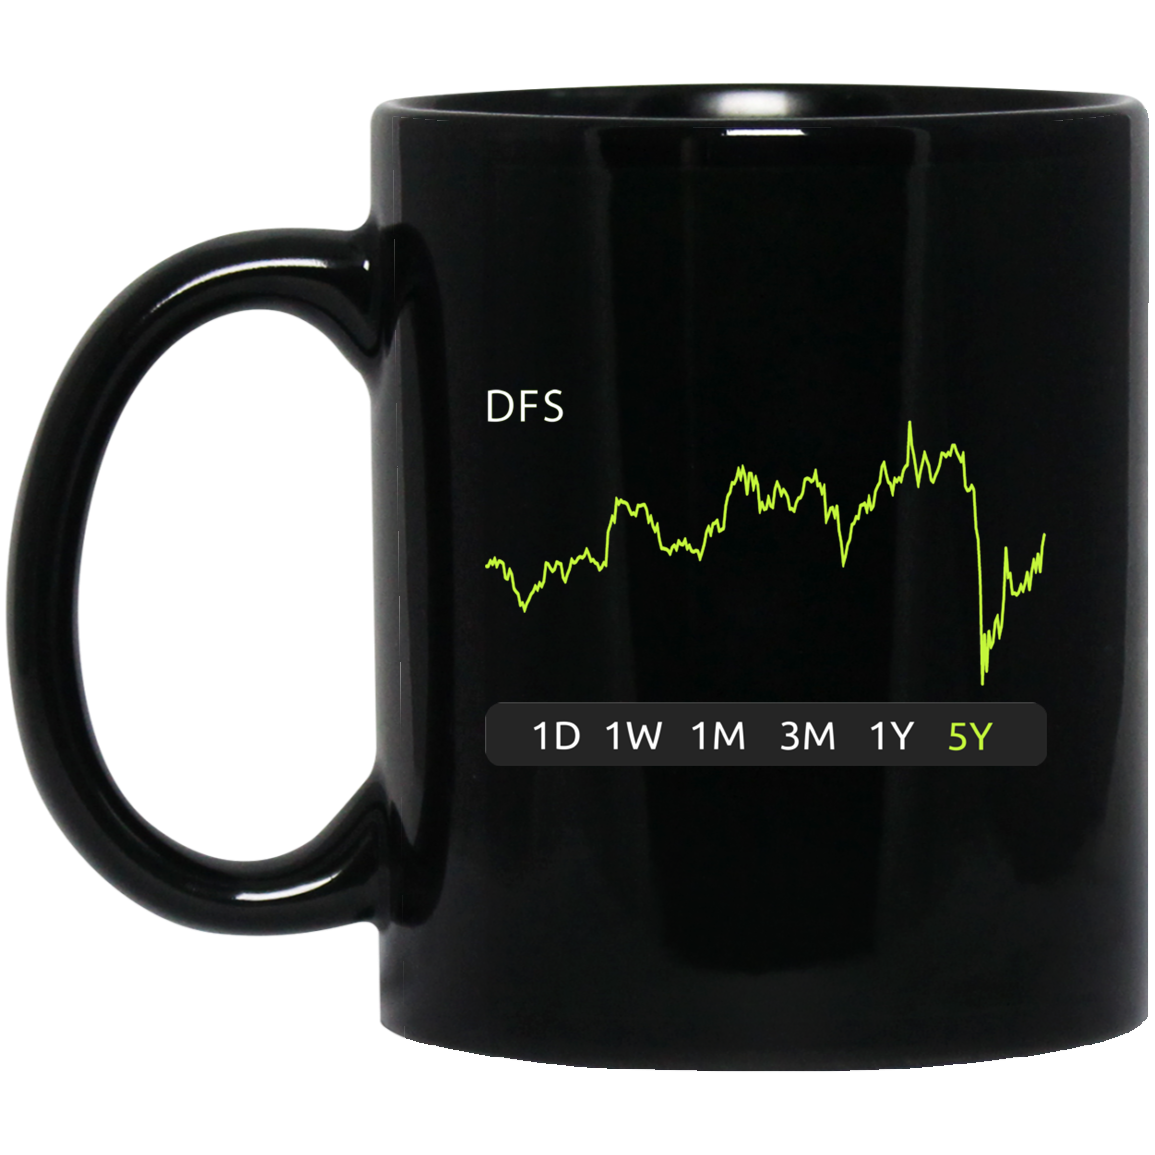 DFS Stock 5y Mug